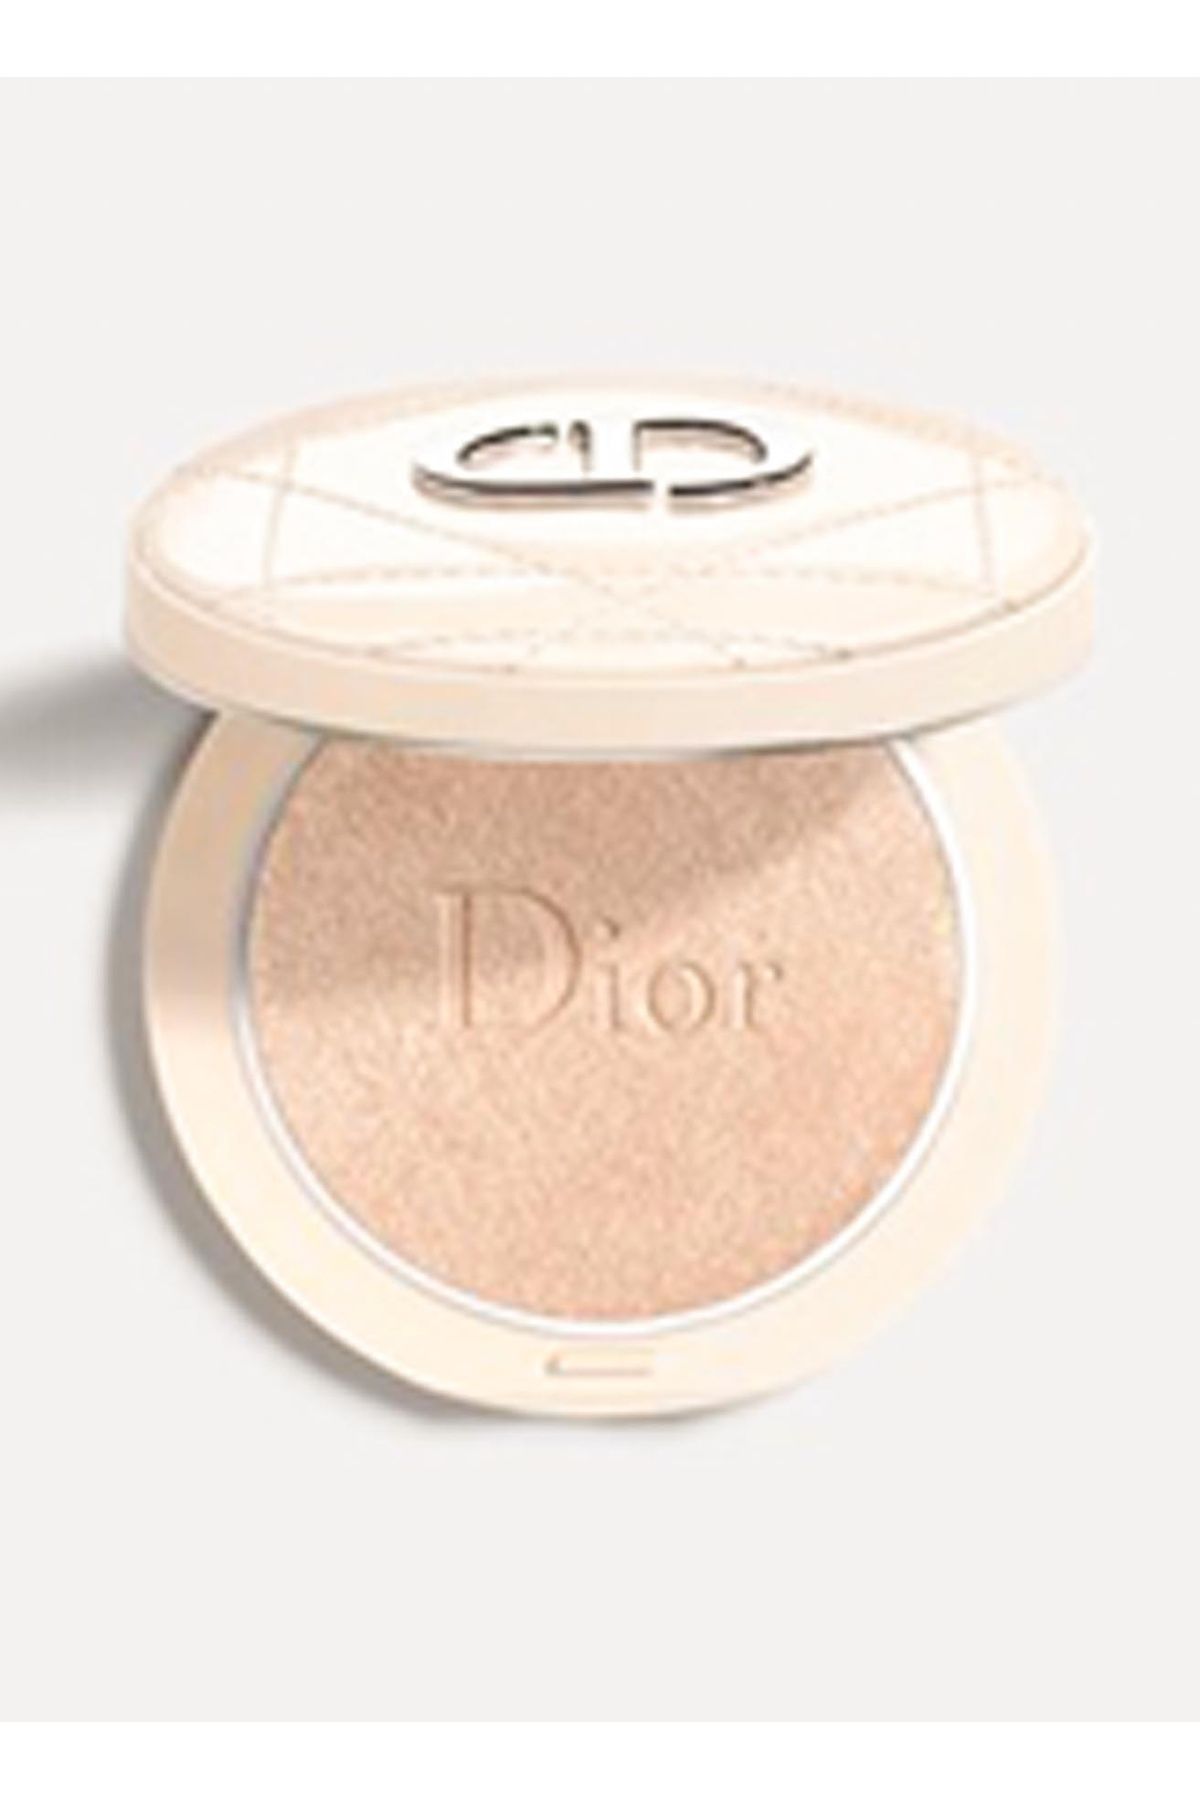 Dior Diorskin Forever Luminizer 01 Nude Glow Aydınlatıcı ve Parlatıcı Pudra